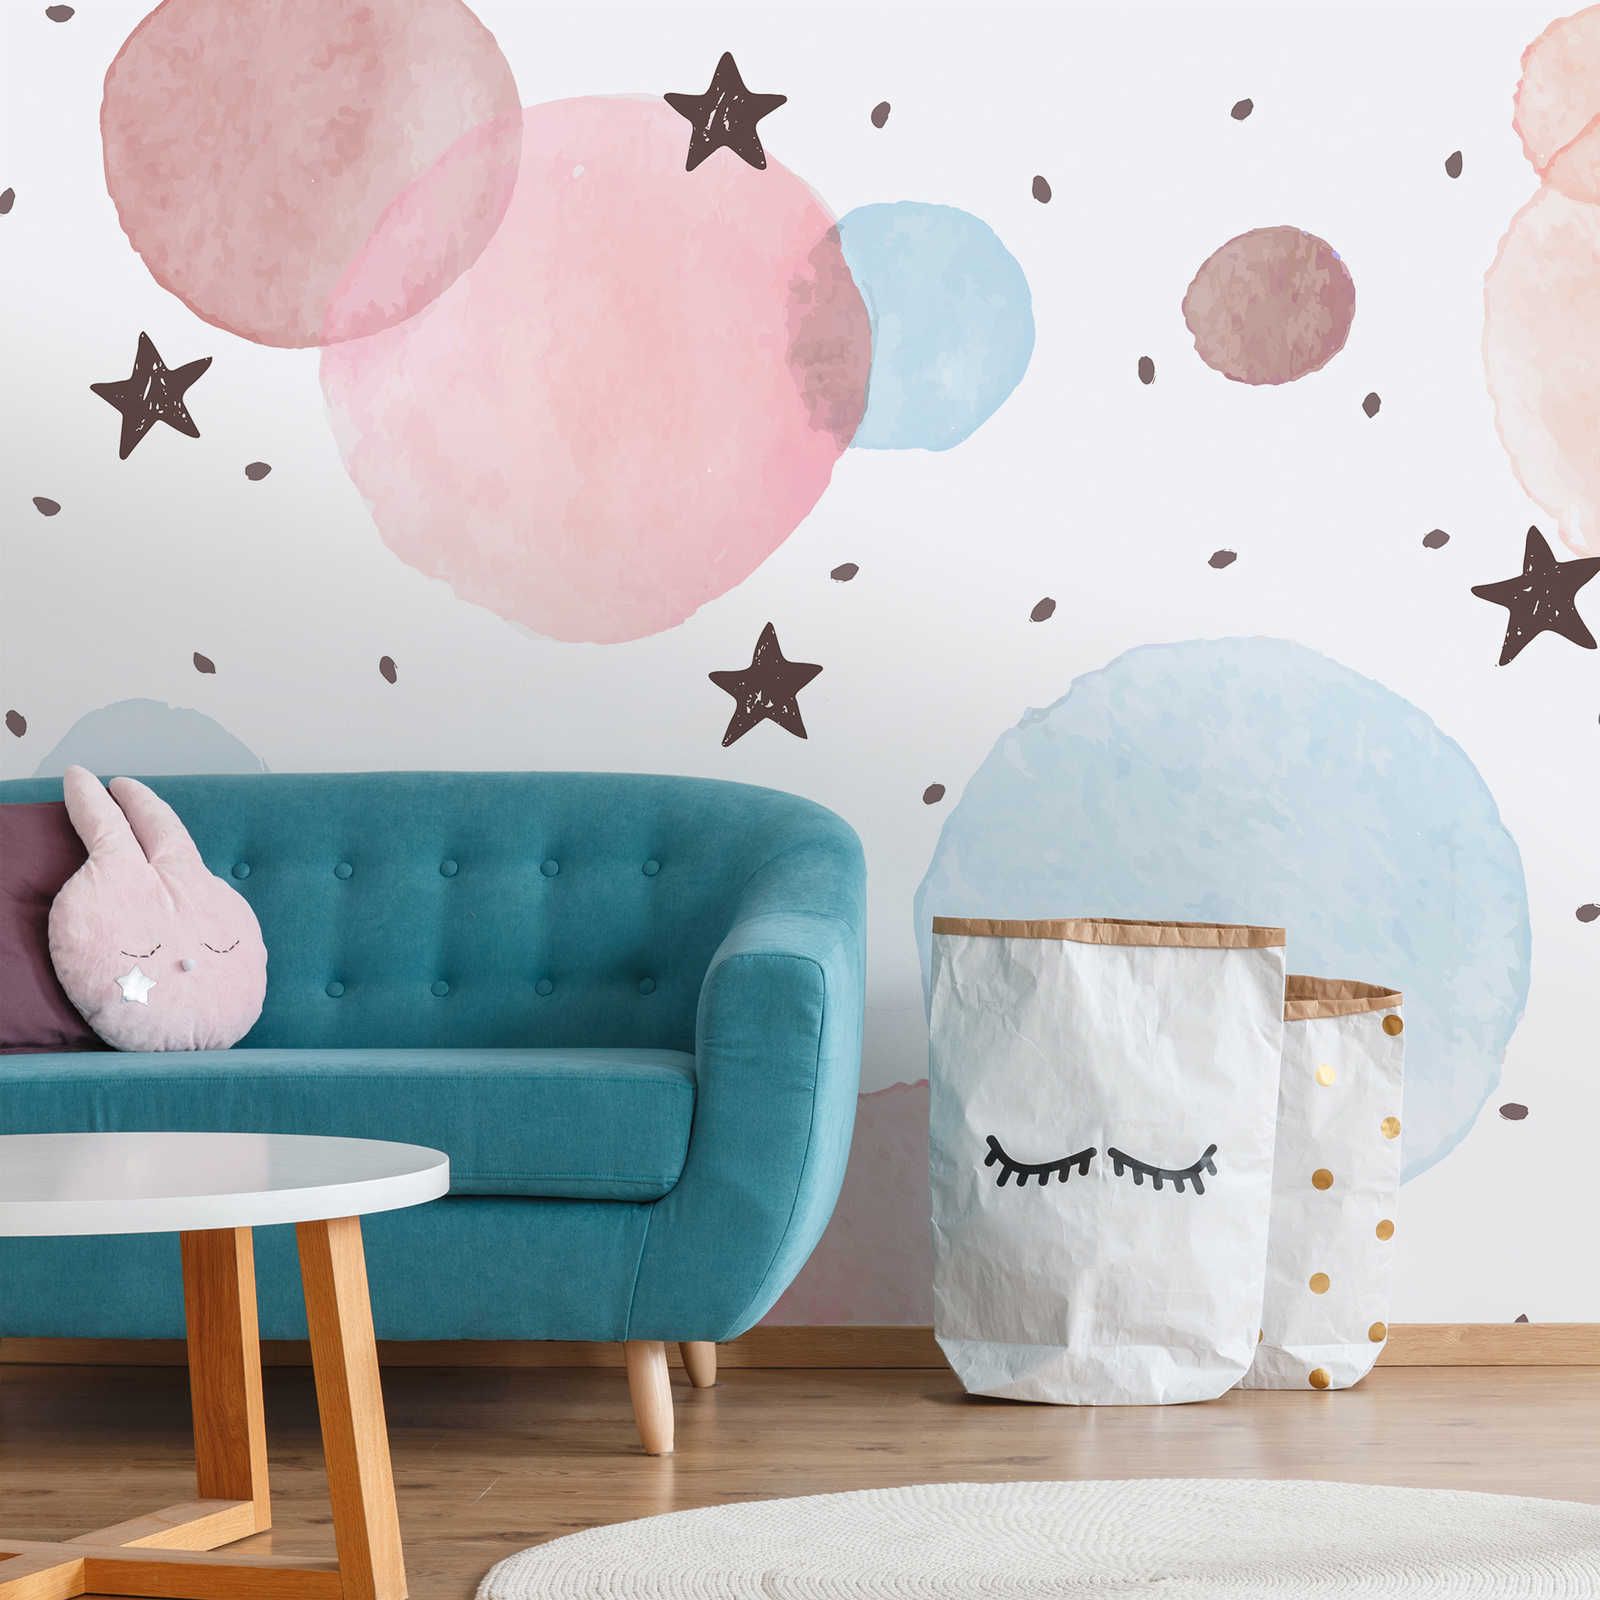         Fototapete fürs Kinderzimmer mit Sternen, Punkten und Kreisen – Glattes & leicht glänzendes Vlies
    